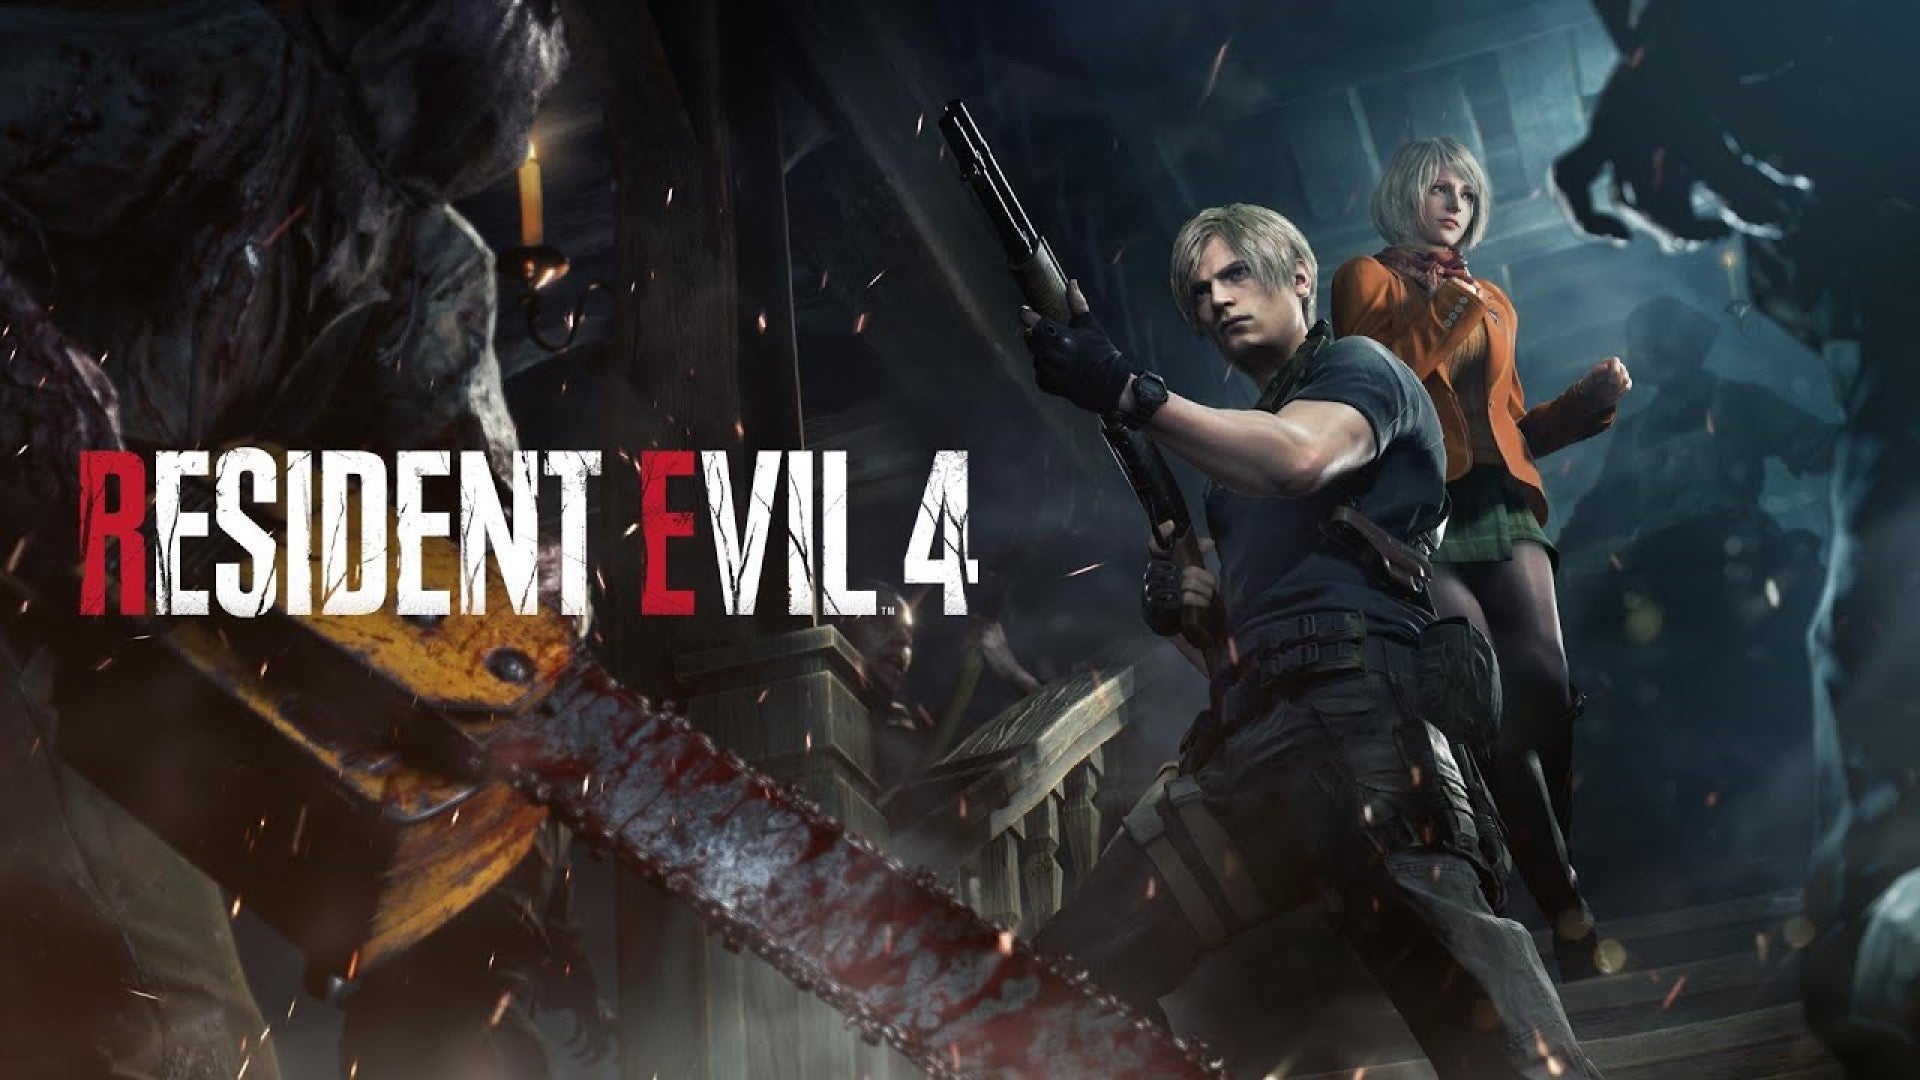 Imagem para Resident Evil 4 acima dos 3 milhões de unidades vendidas em 2 dias